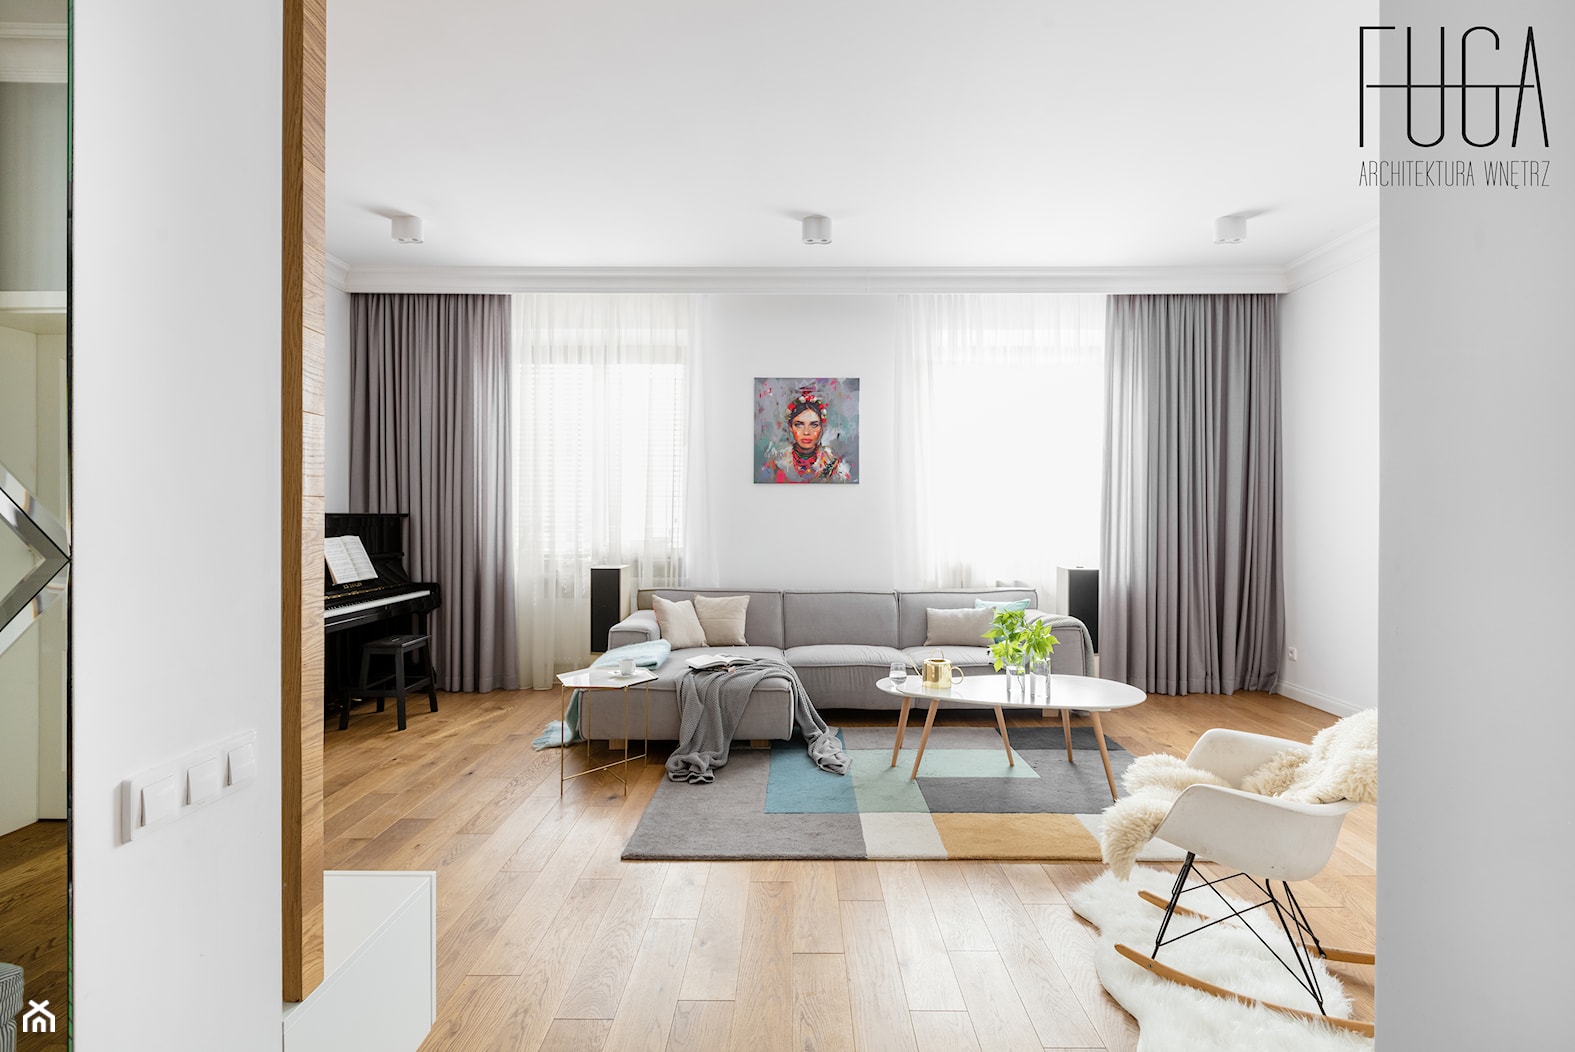 Apartament 130 m² - Salon, styl tradycyjny - zdjęcie od Fuga Architektura Wnętrz - Homebook